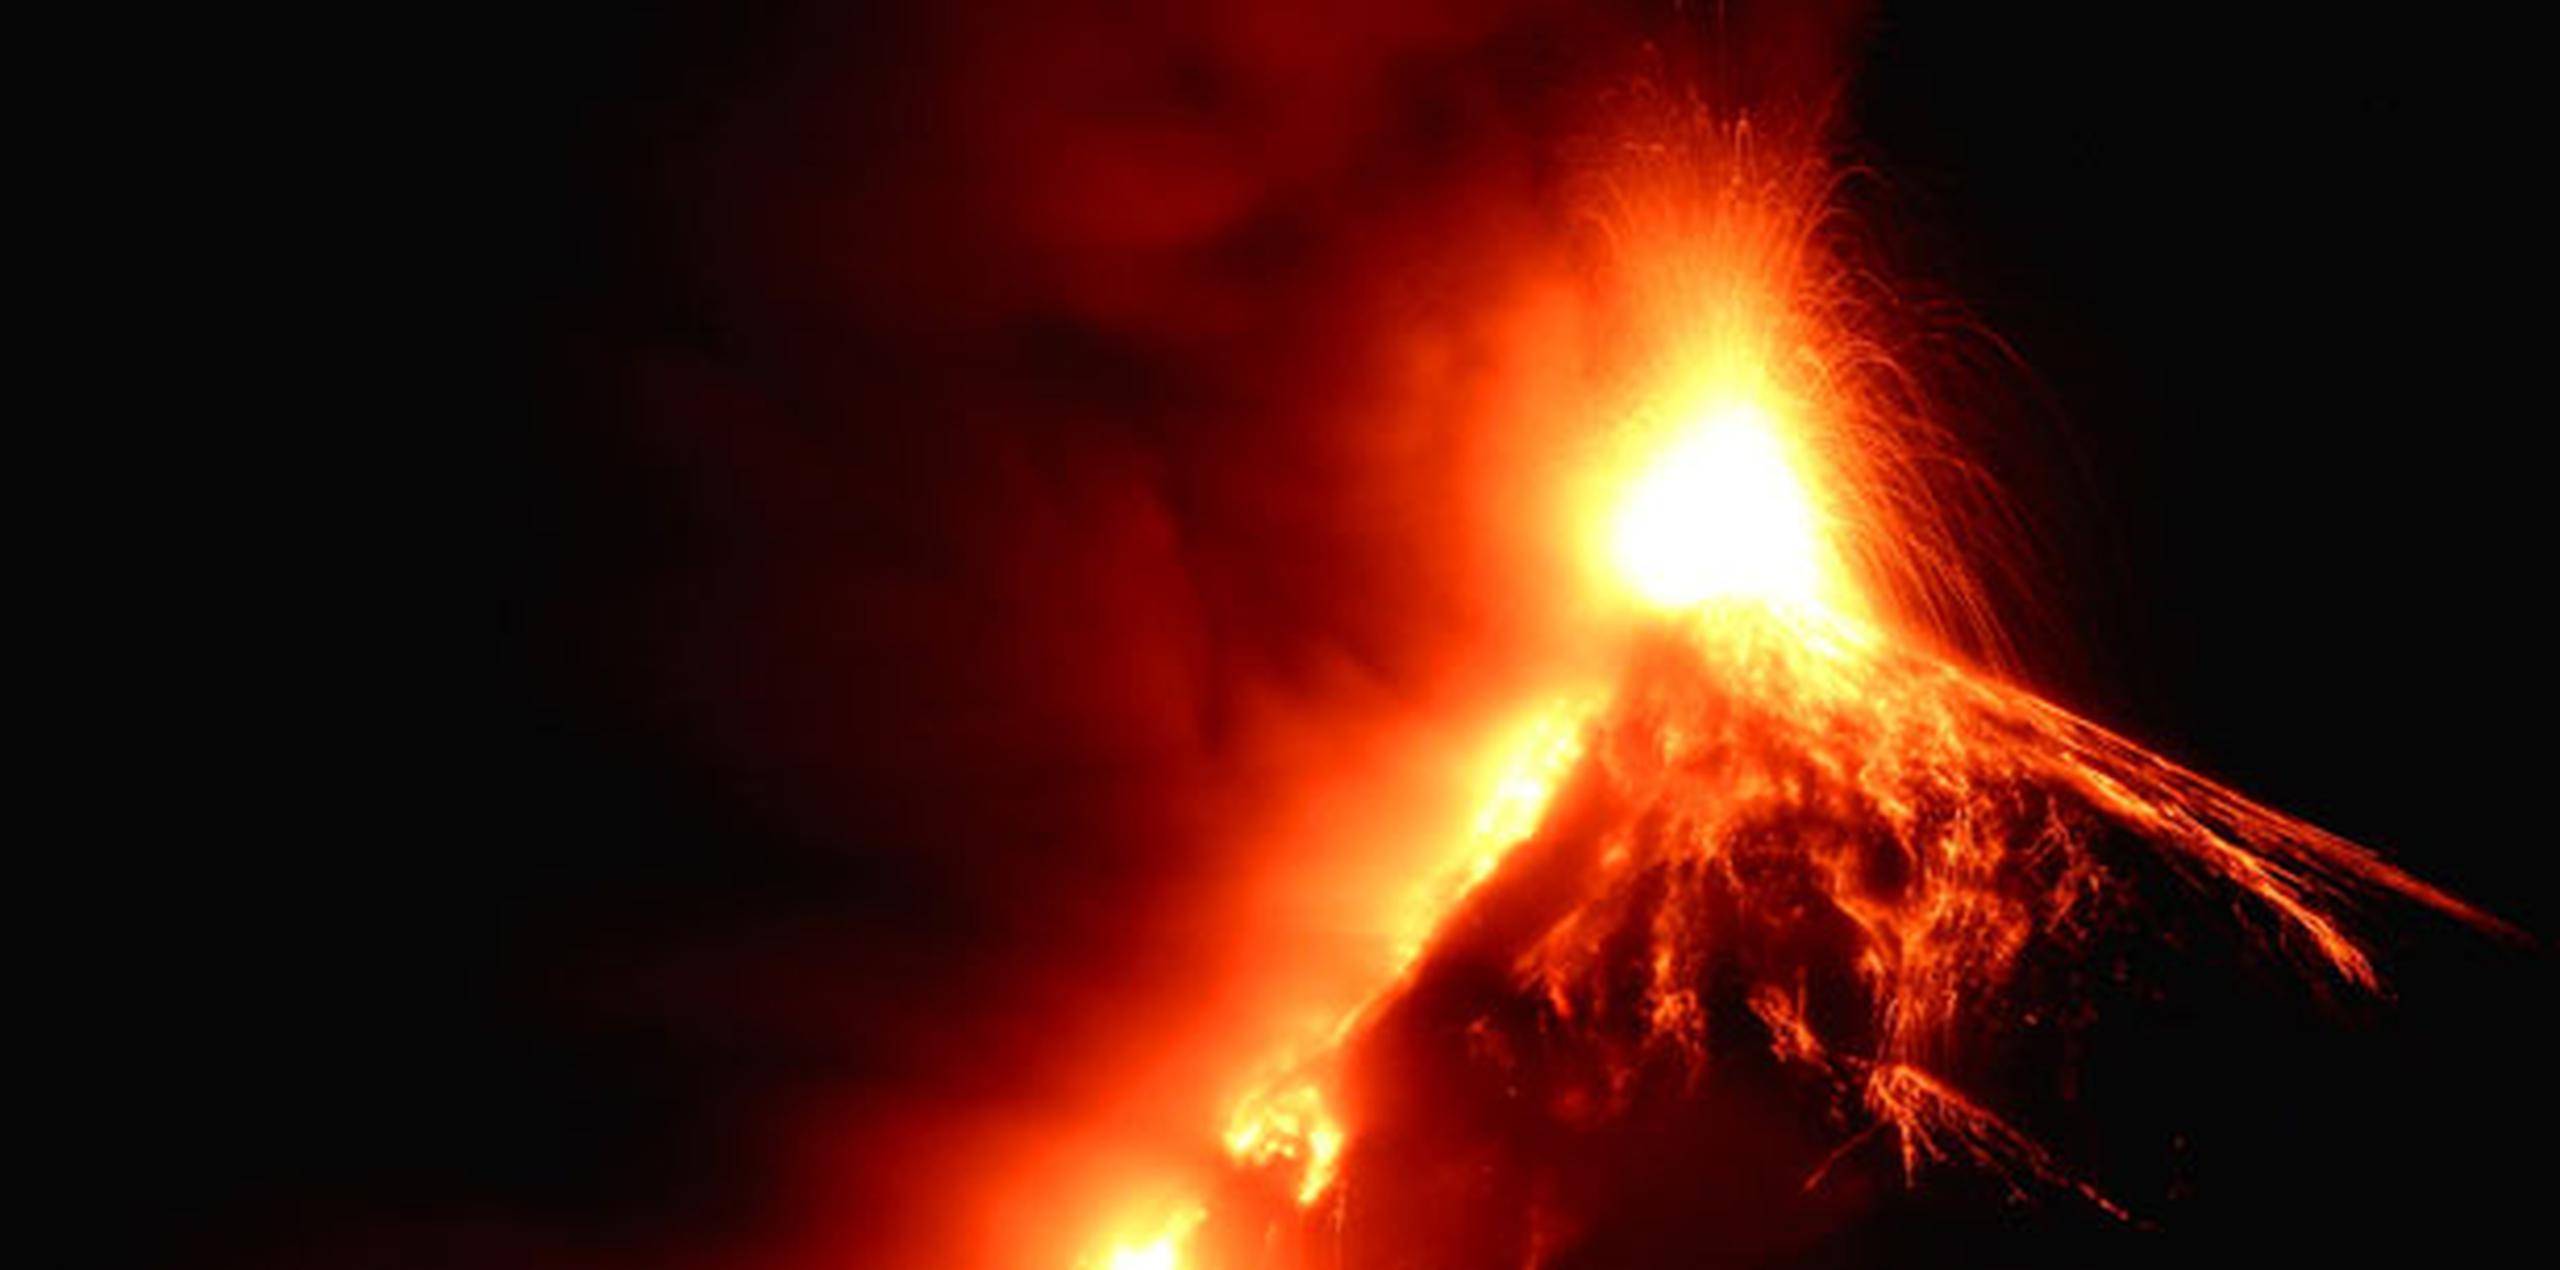 Este lunes se observó el descenso de flujos piroclásticos, nubes a alta temperatura que descienden por las faldas del volcán, debido a la acumulación de lava. (EFE/Esteban Biba)